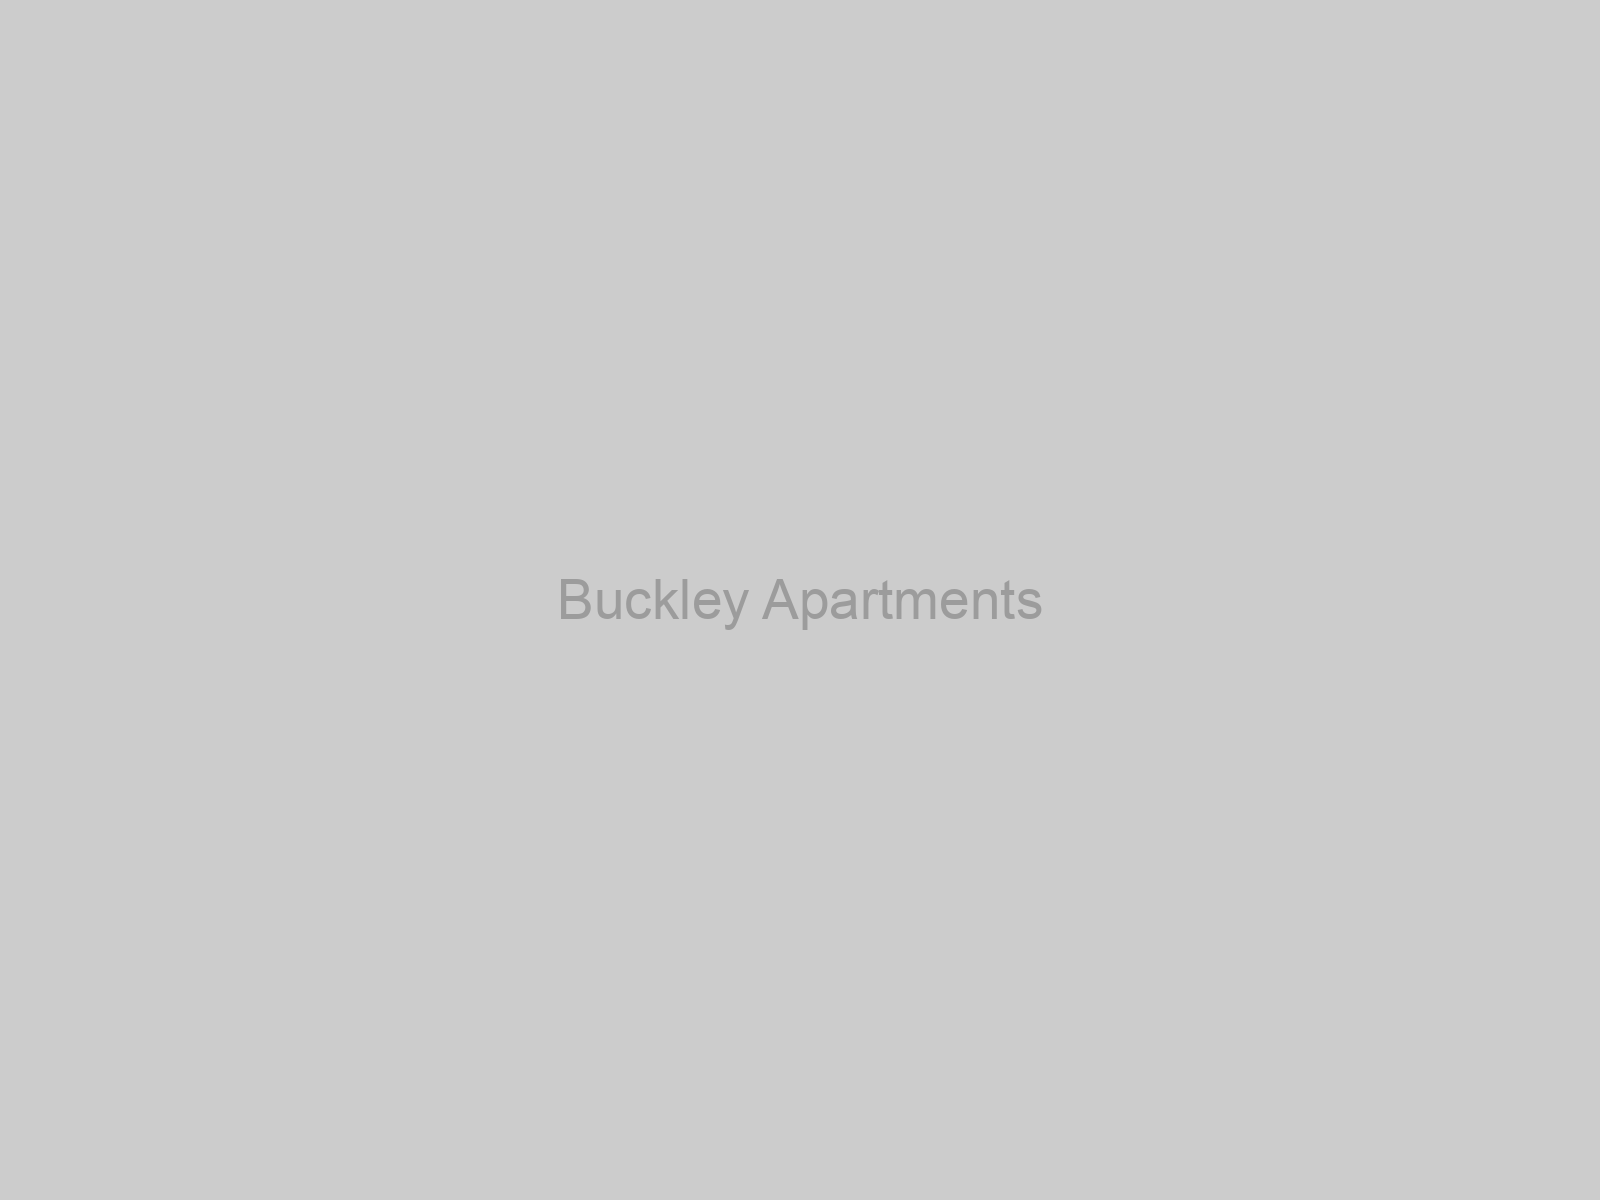 Buckley Apartments